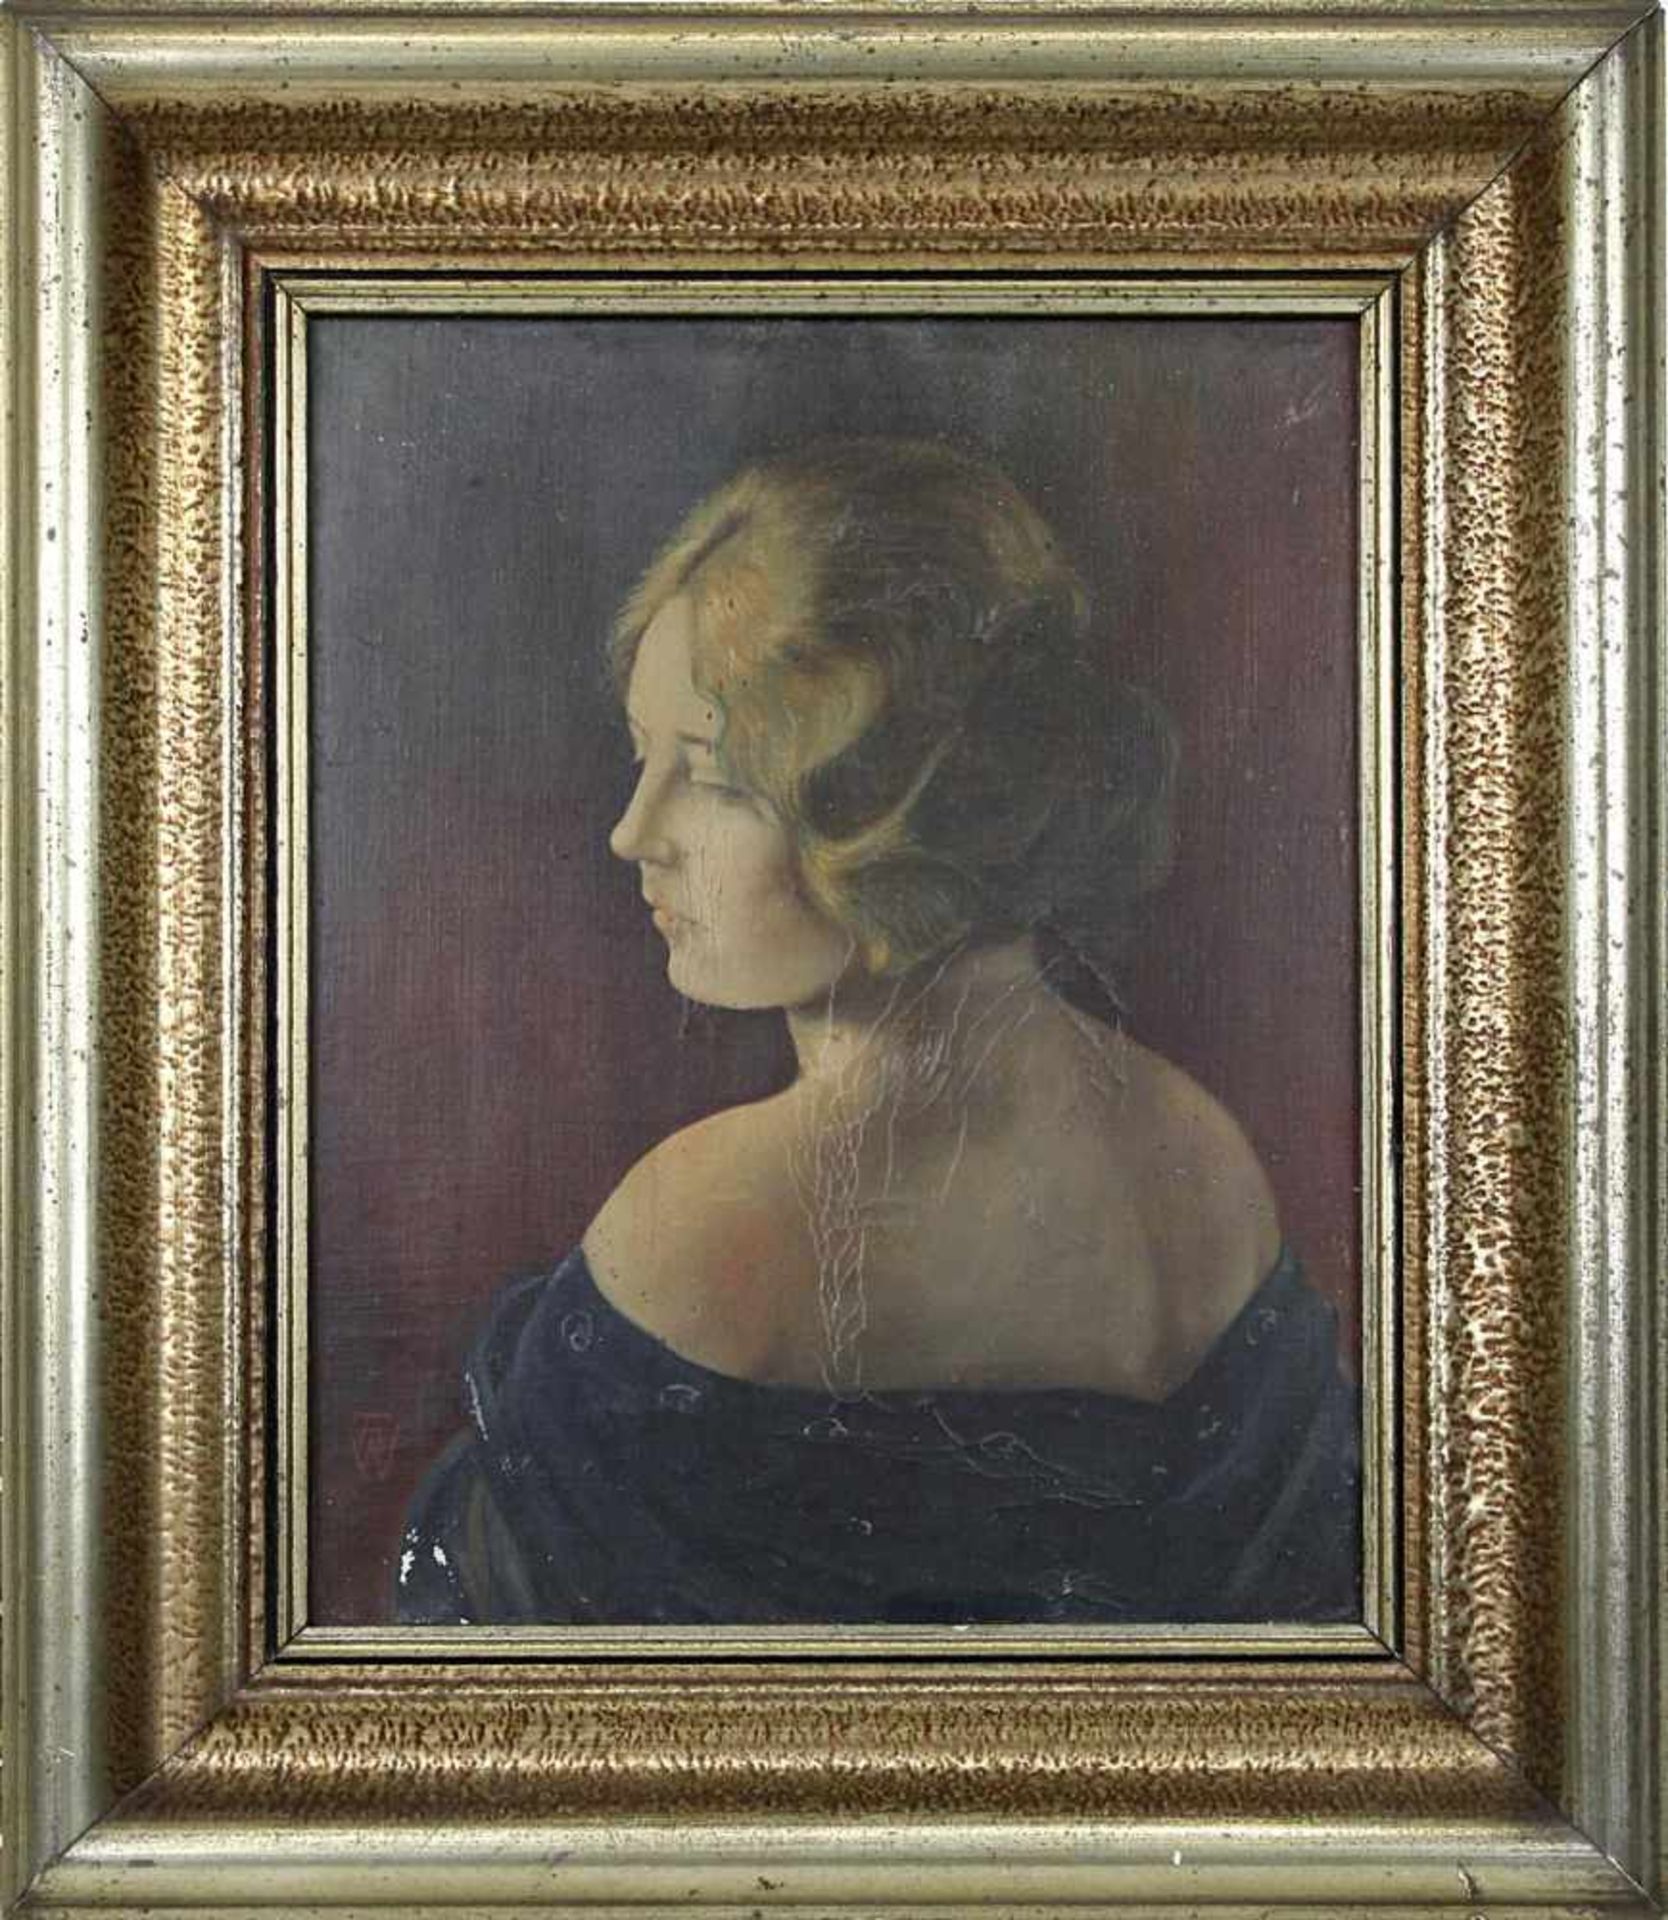 dt. Bildnismaler, um 1900, Portrait mit Rückenpartie einer jungen Frau, Öl auf Leinwand (mittig